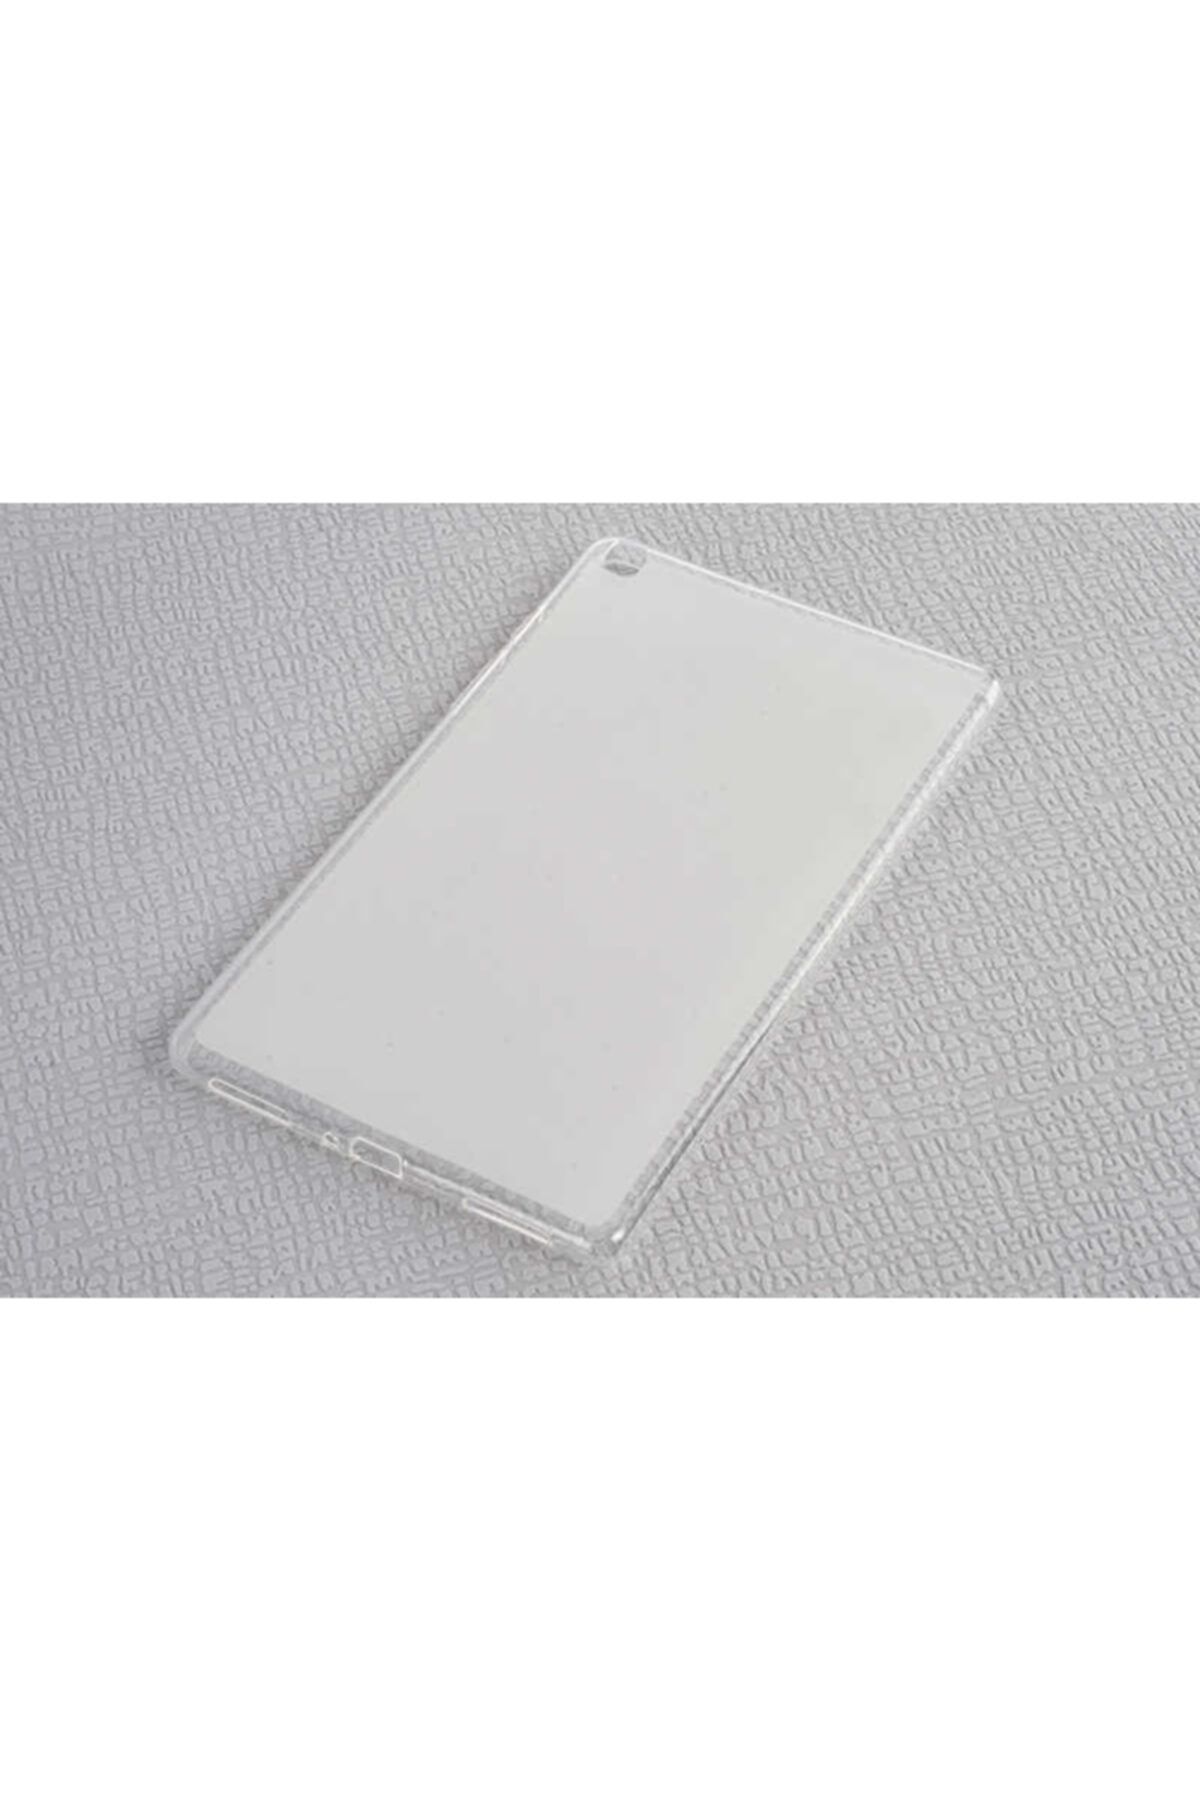 Samsung Galaxy Tab A 8.0 T290 Kılıf Tablet Lüx Süper Yumuşak 0.3mm Silikon